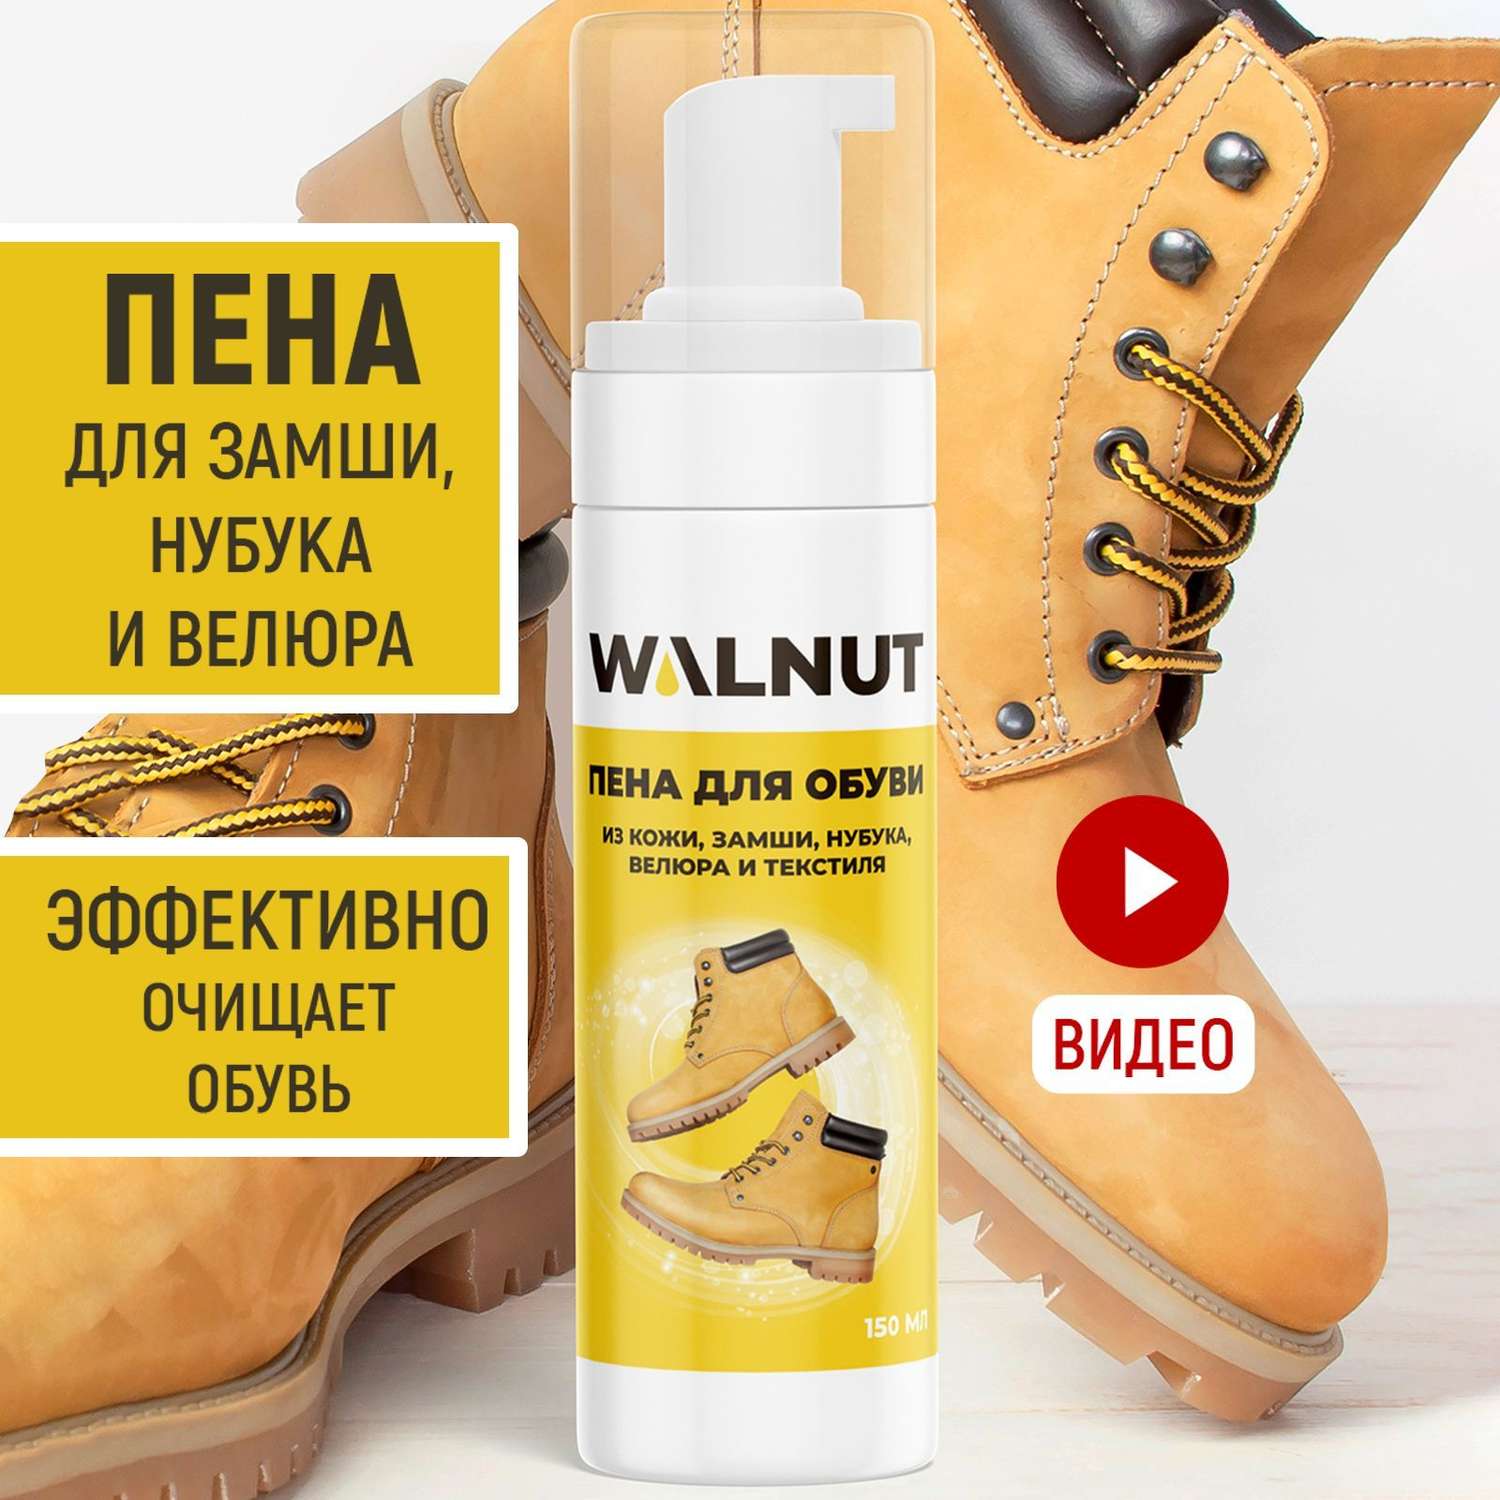 Пена для обуви WALNUT WLN0357 WLN0357 - фото 2